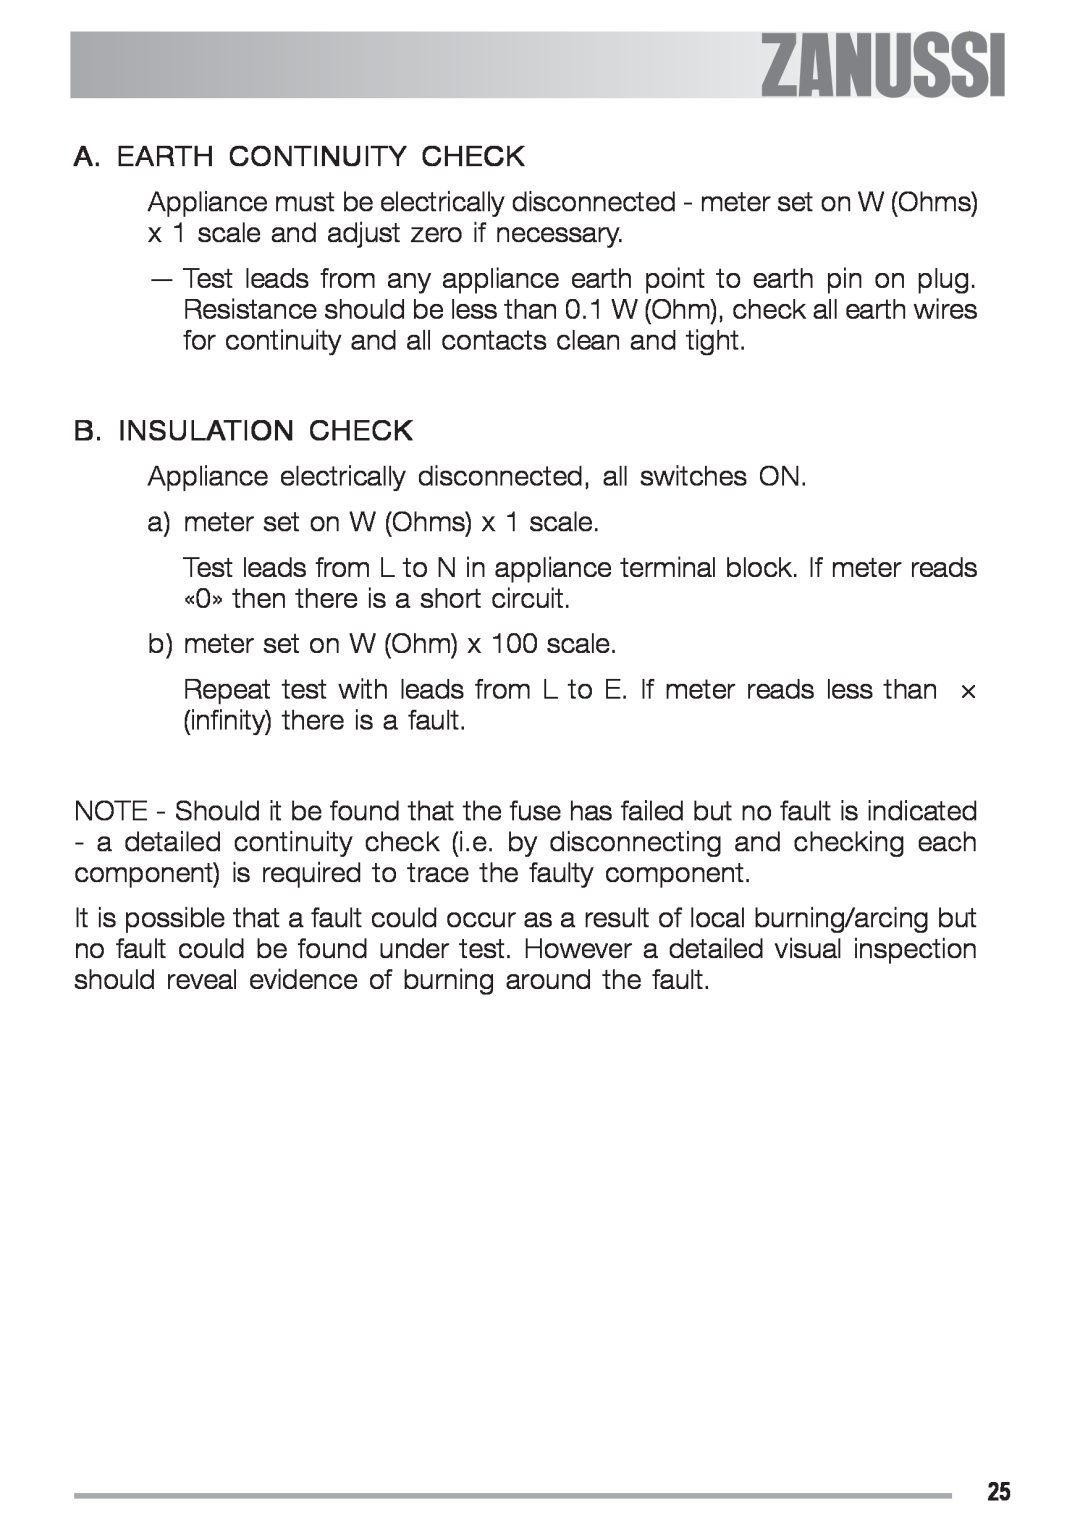 Zanussi ZGS 682 ICT manual A. Earth Continuity Check, B. Insulation Check 